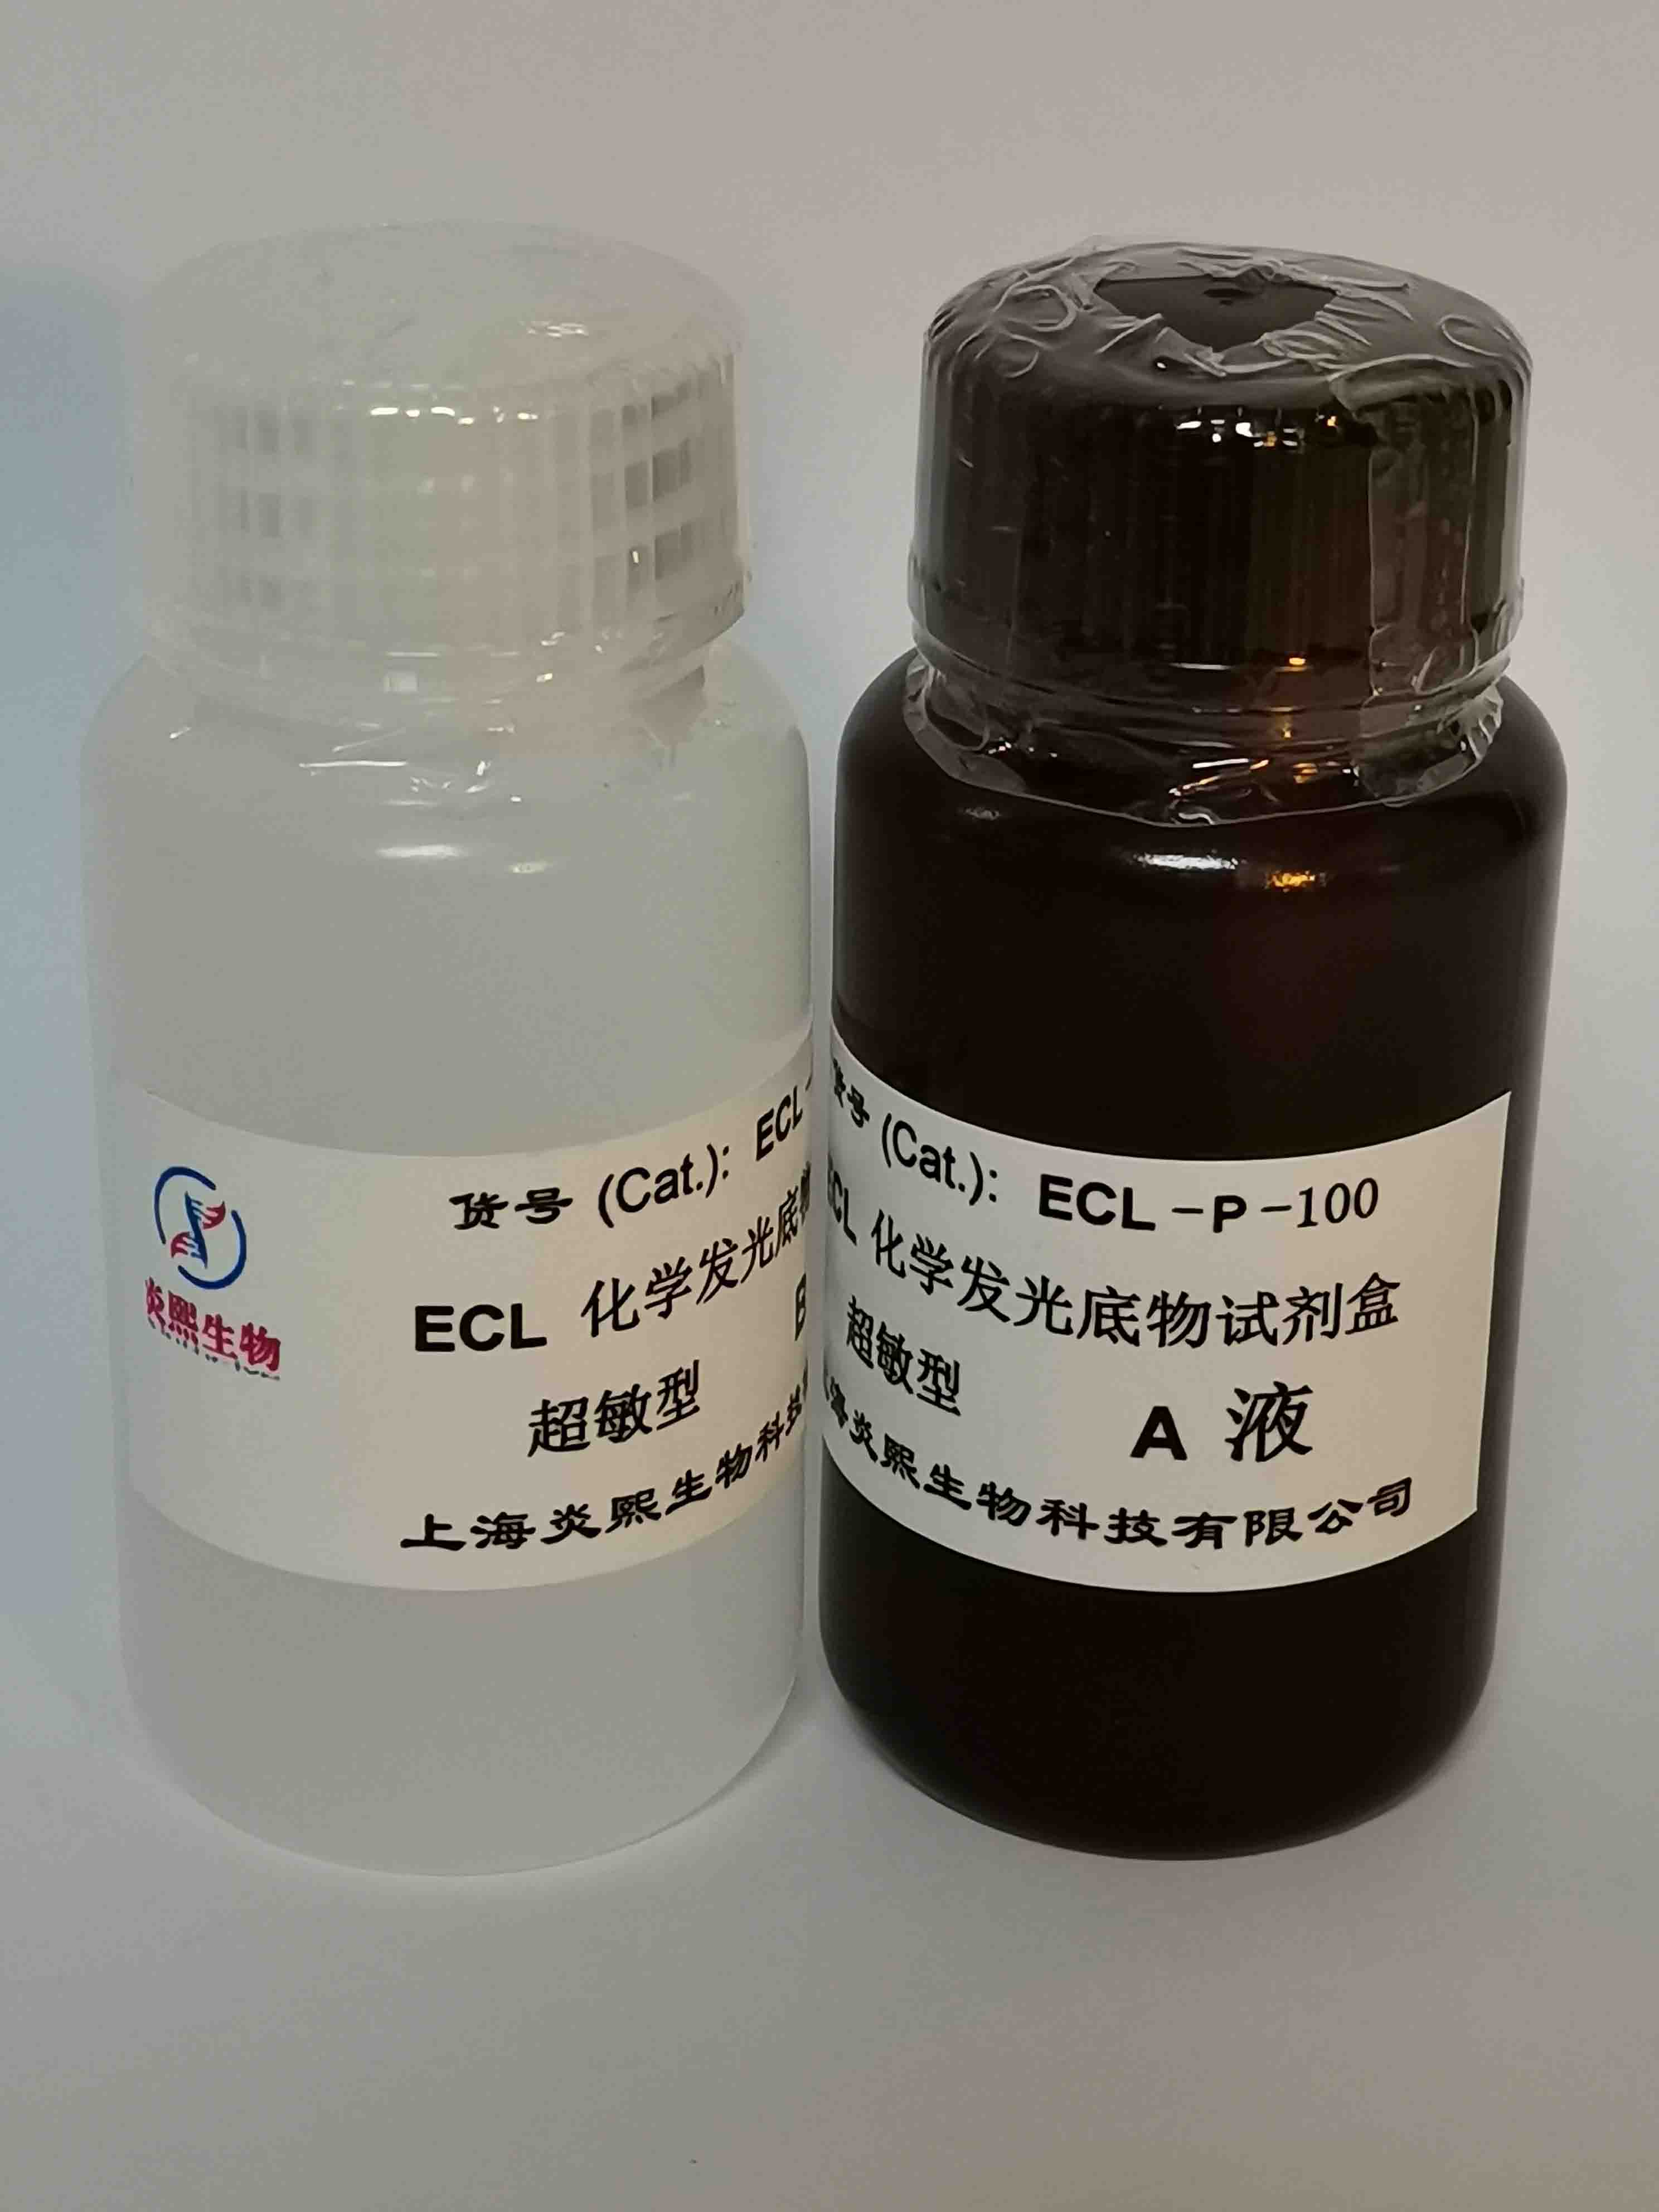 上海市超敏型 ECL化学发光底物试剂盒厂家